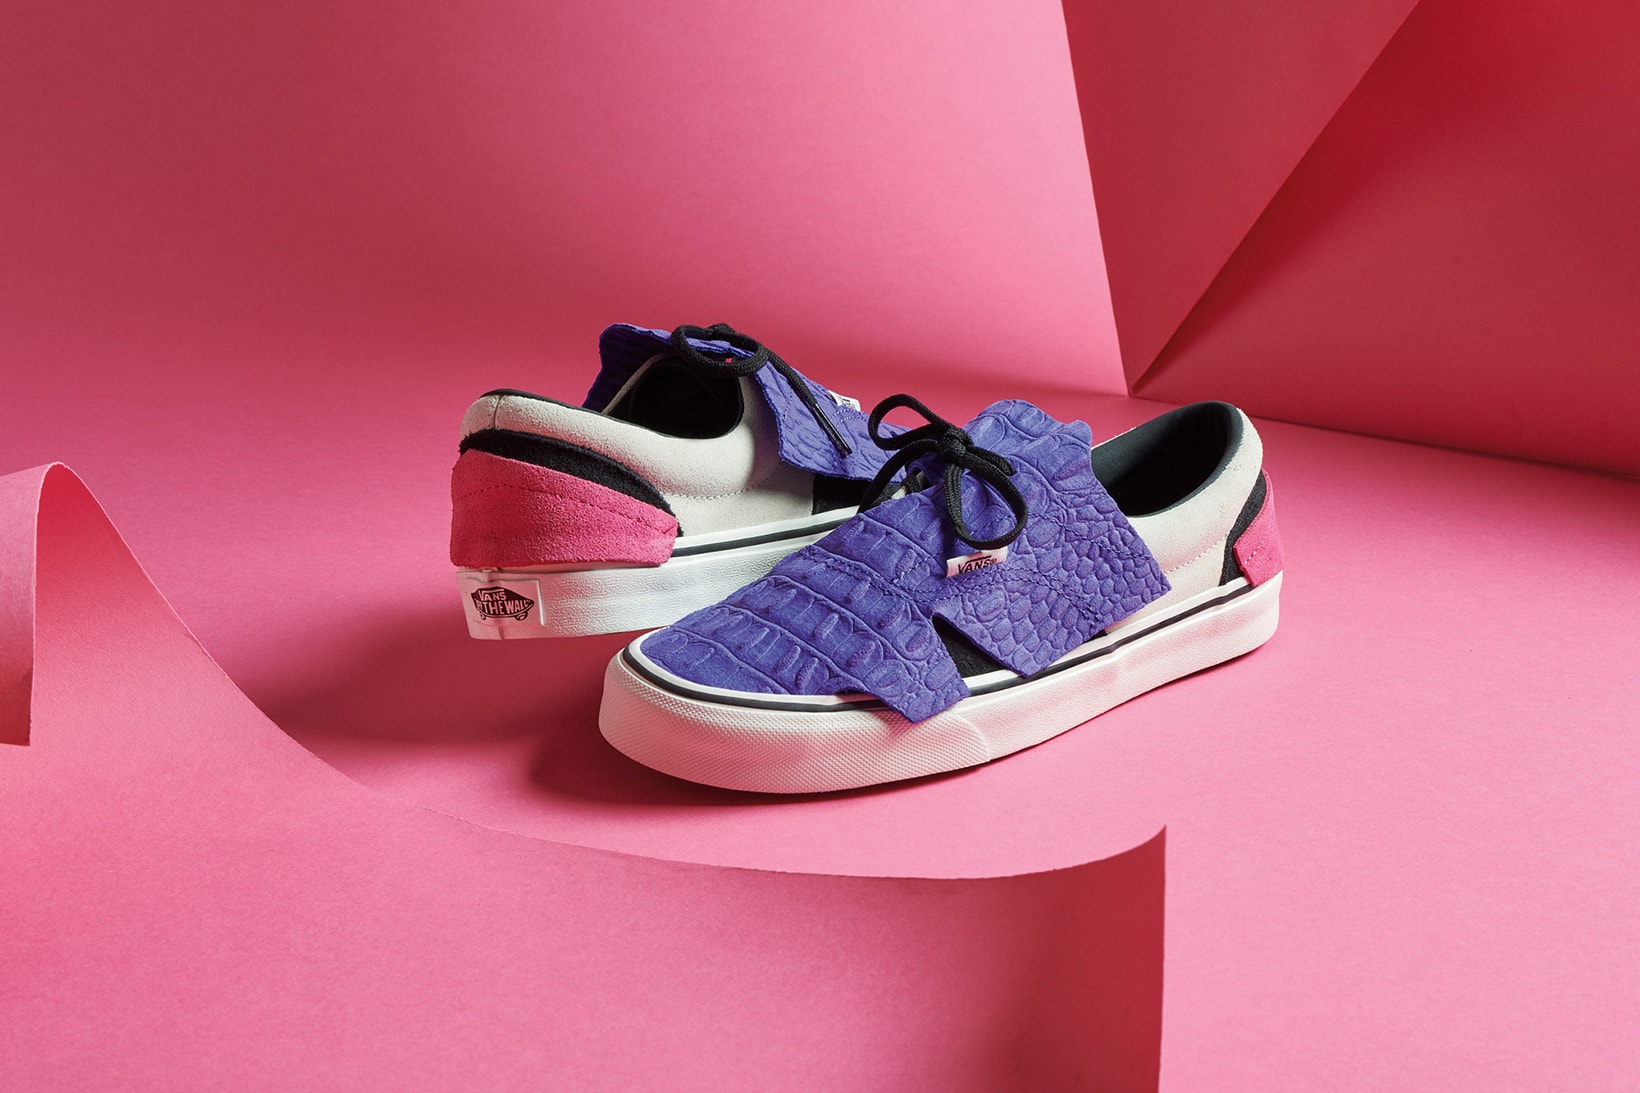 vans origami pack era slip on sneakers black white purple shoes footwear sneakerhead